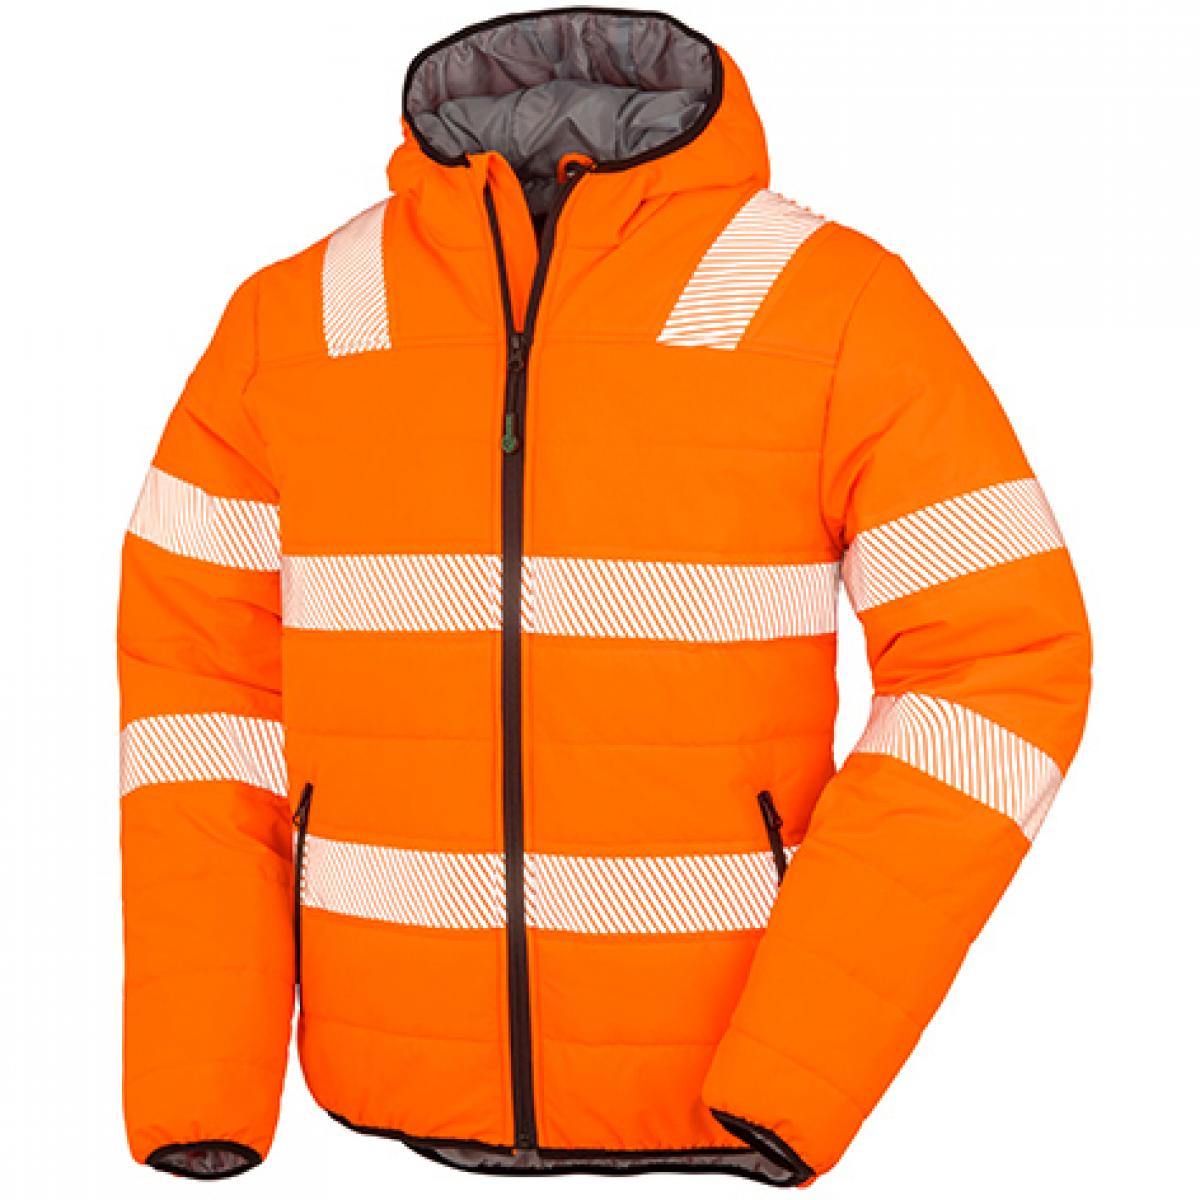 Hersteller: Result Genuine Recycled Herstellernummer: R500X Artikelbezeichnung: Recycled Ripstop Padded Safety Jacket - Arbeitsjacke Farbe: Fluorescent Orange